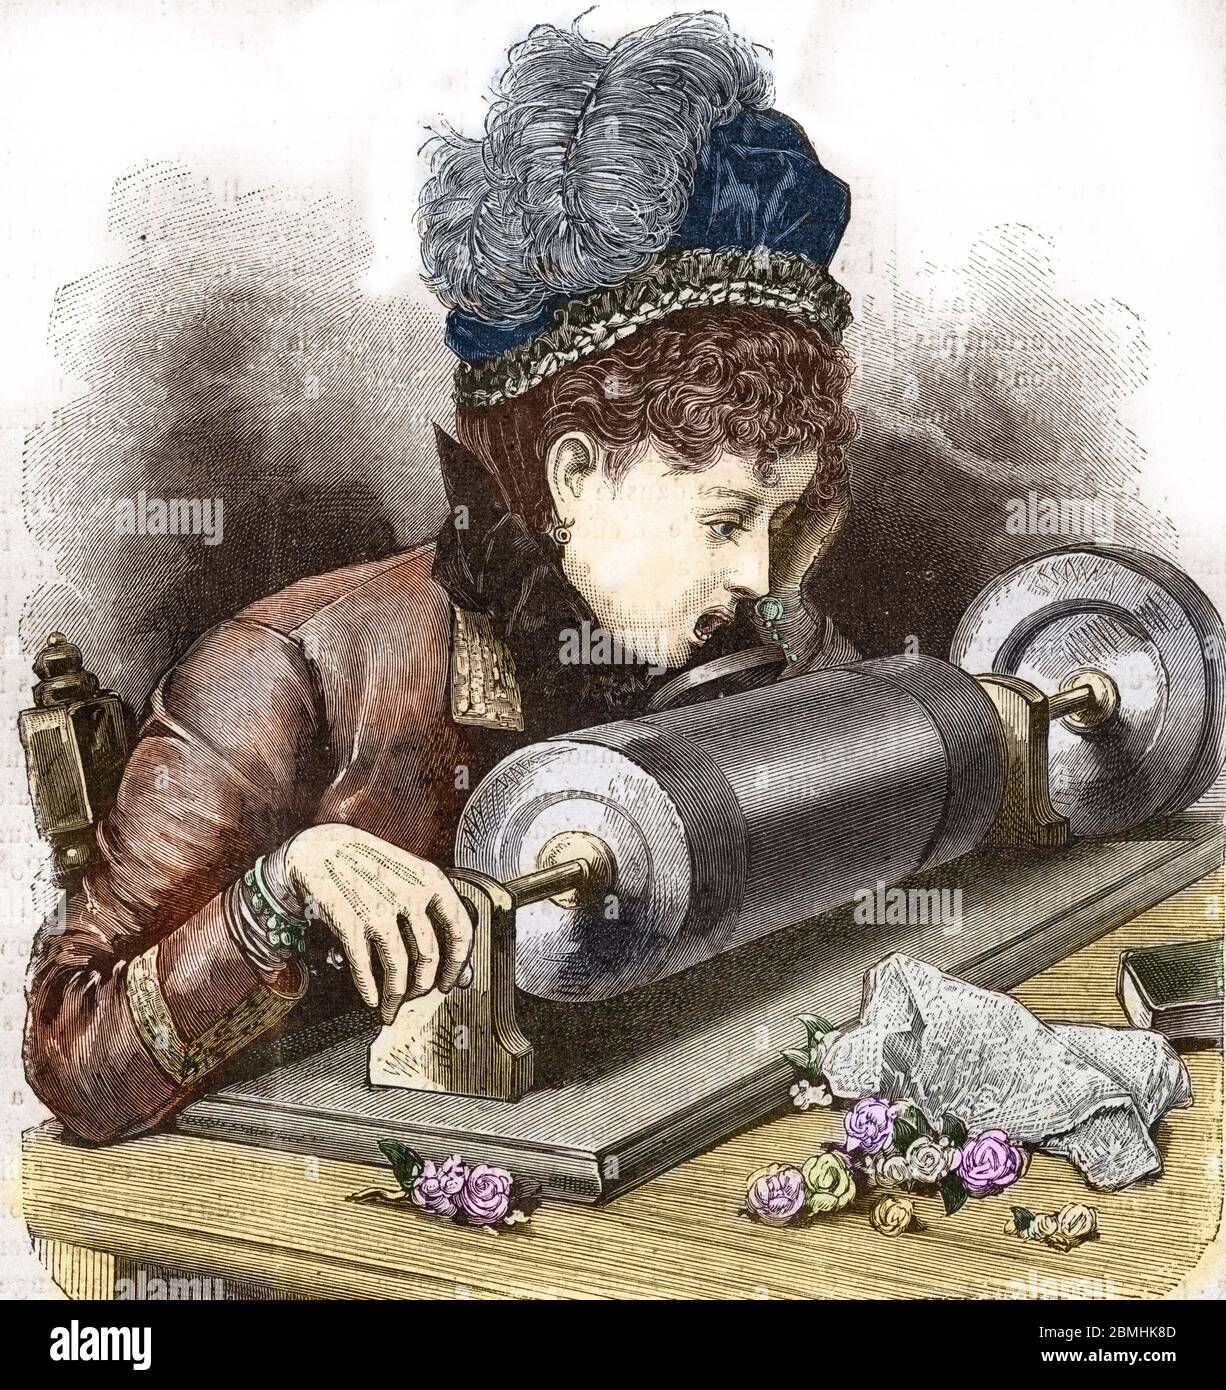 Le phonographe de Thomas Edison (1877) : enregistrement d'un fils, une jeune femme enregistrée sa propre voix - Gravide - enregistrement sonore : une femme reco Banque D'Images